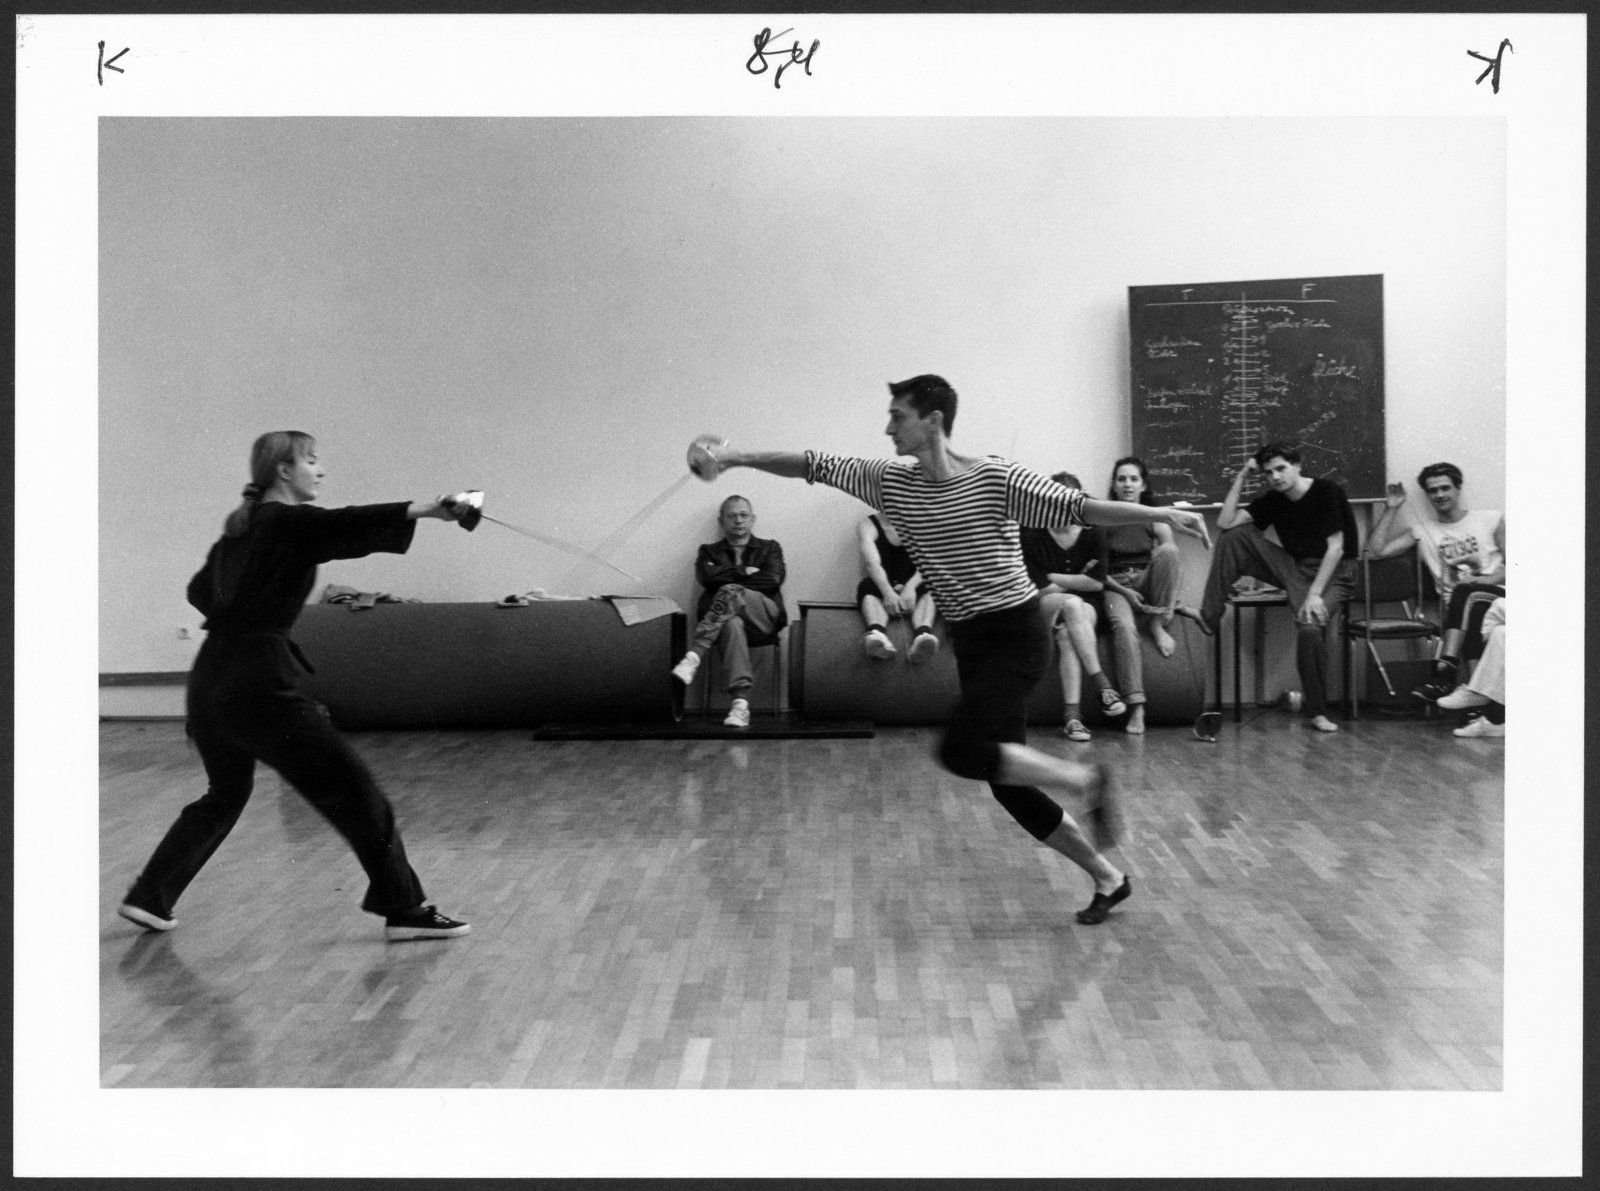 Bild aus dem Fecht-Unterricht an der Hochschule für Schauspielkunst Ernst Busch (Hochschule für Schauspielkunst Ernst Busch Berlin RR-F)